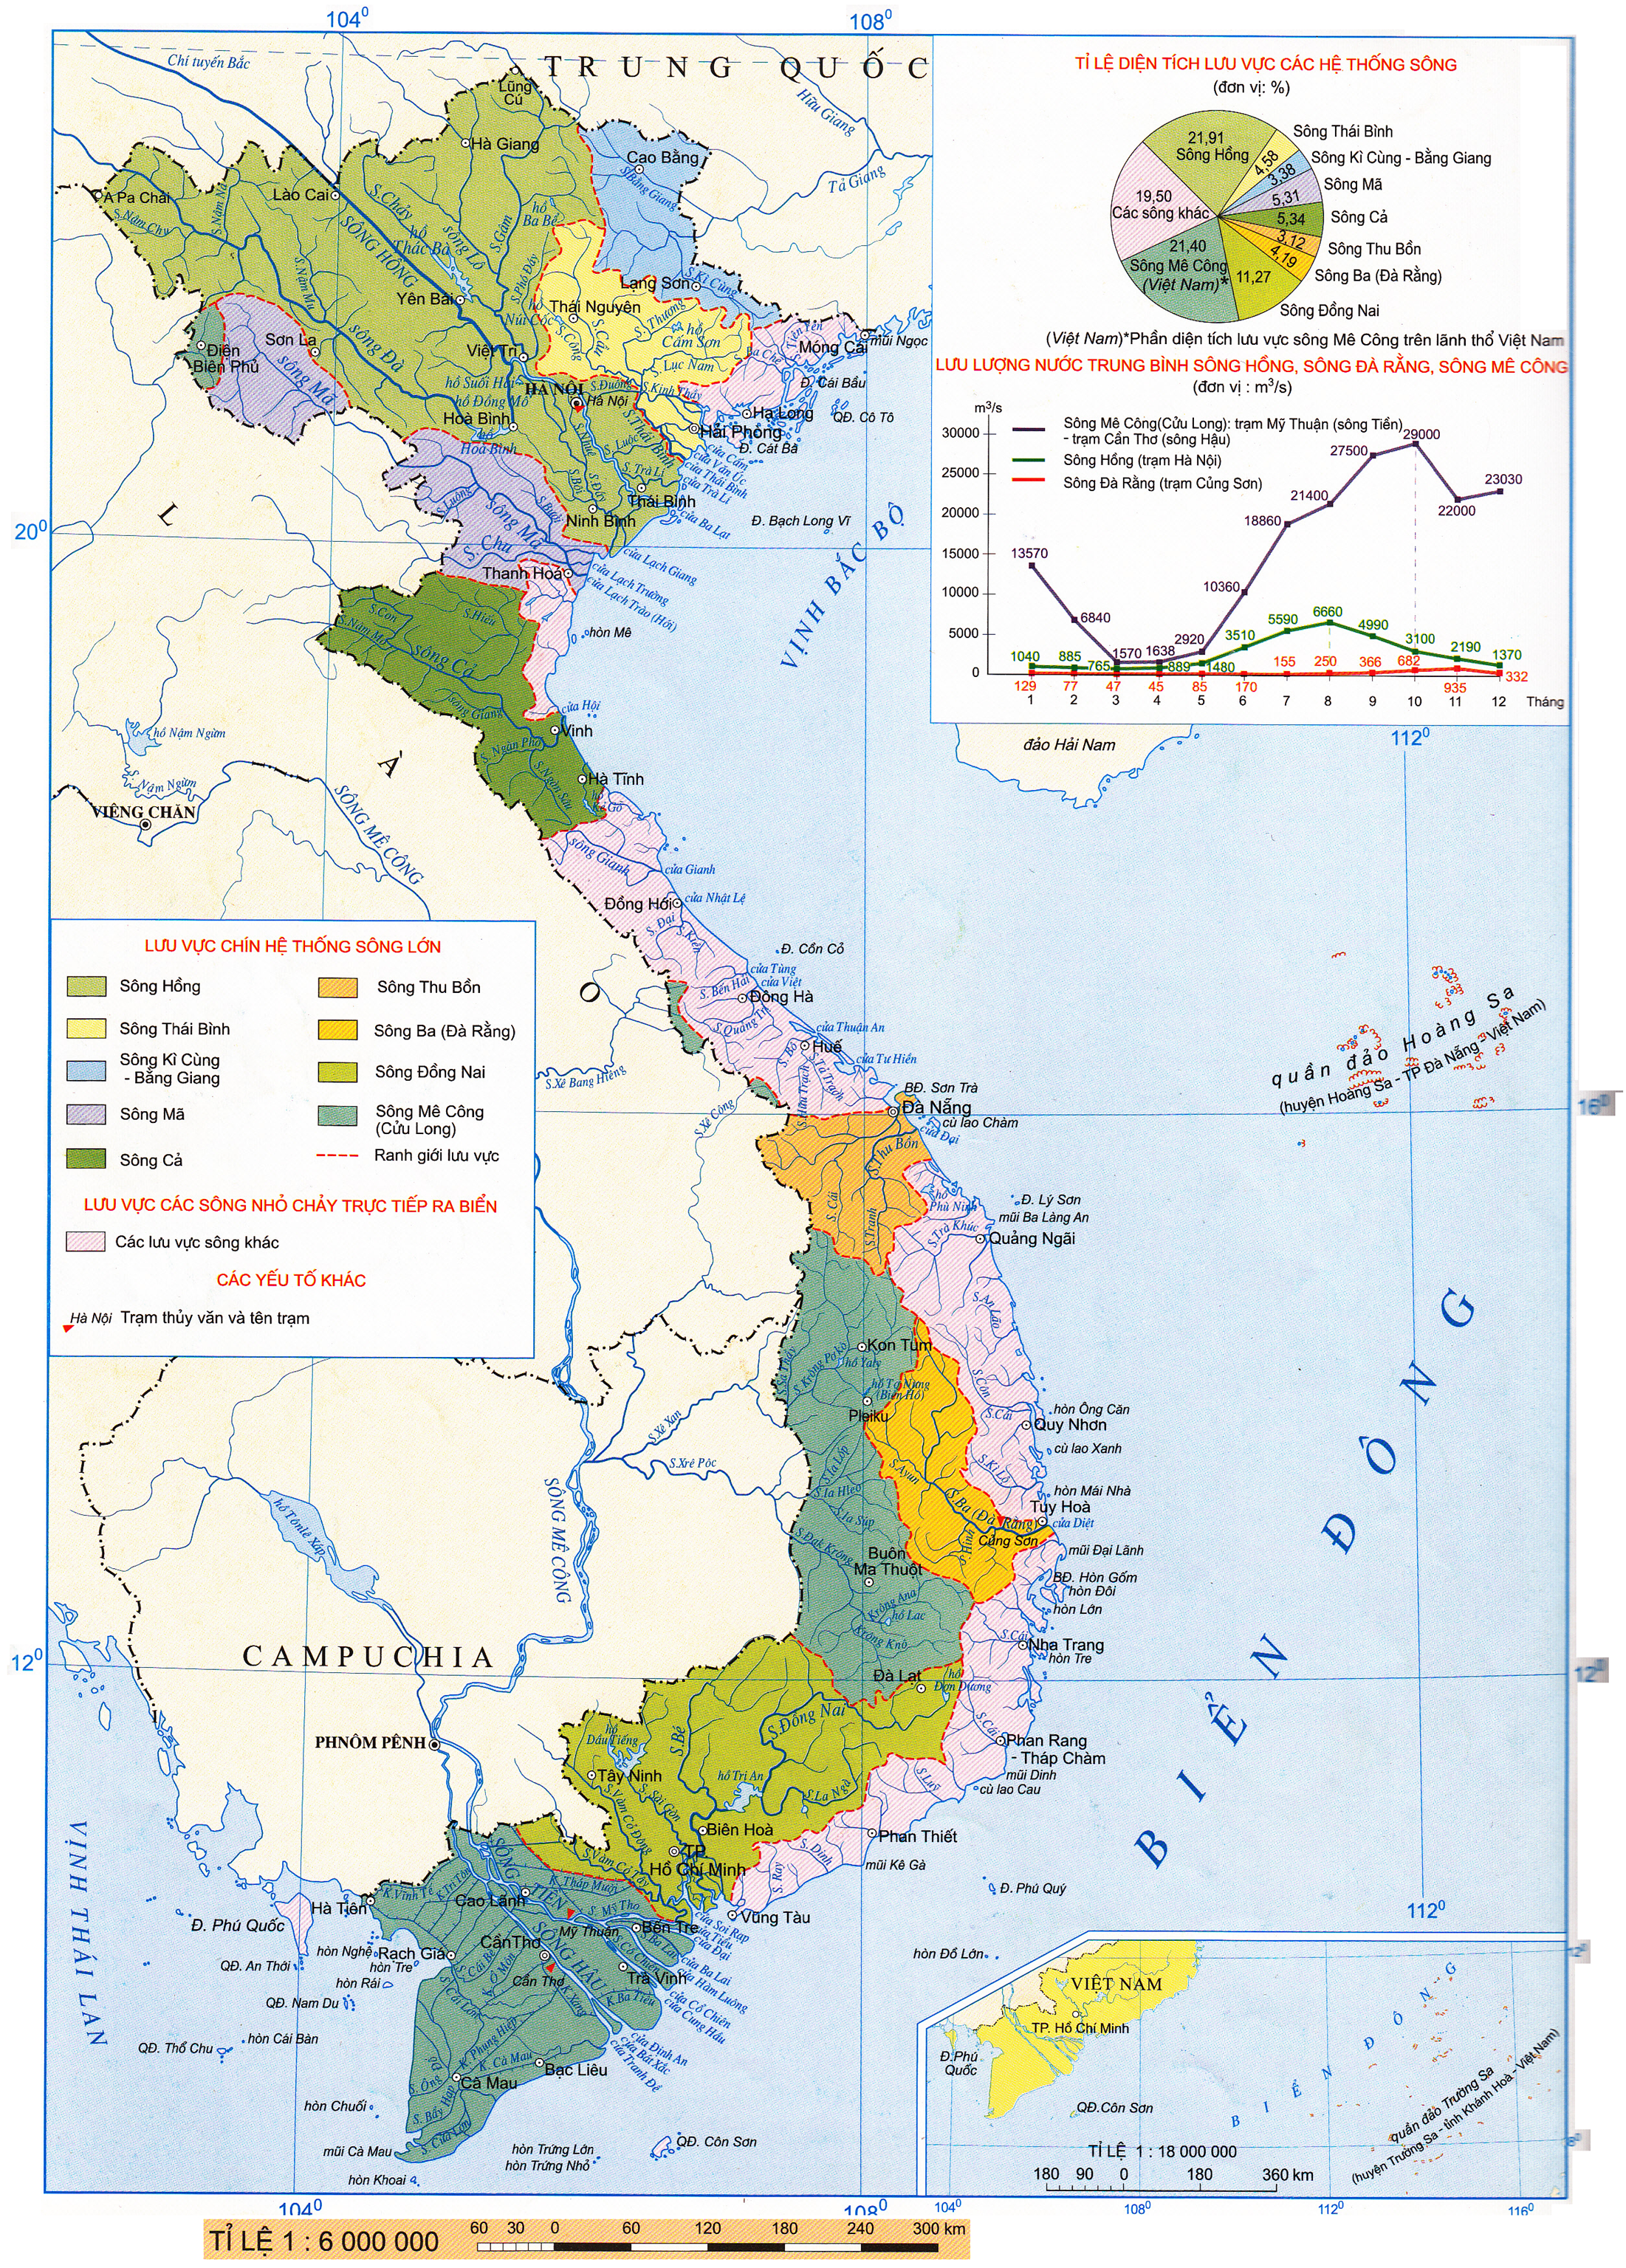 Atlas Địa lí Việt Nam 2024:
Khám phá đất nước Việt Nam đầy thú vị và tiềm năng qua Atlas Địa lý Việt Nam